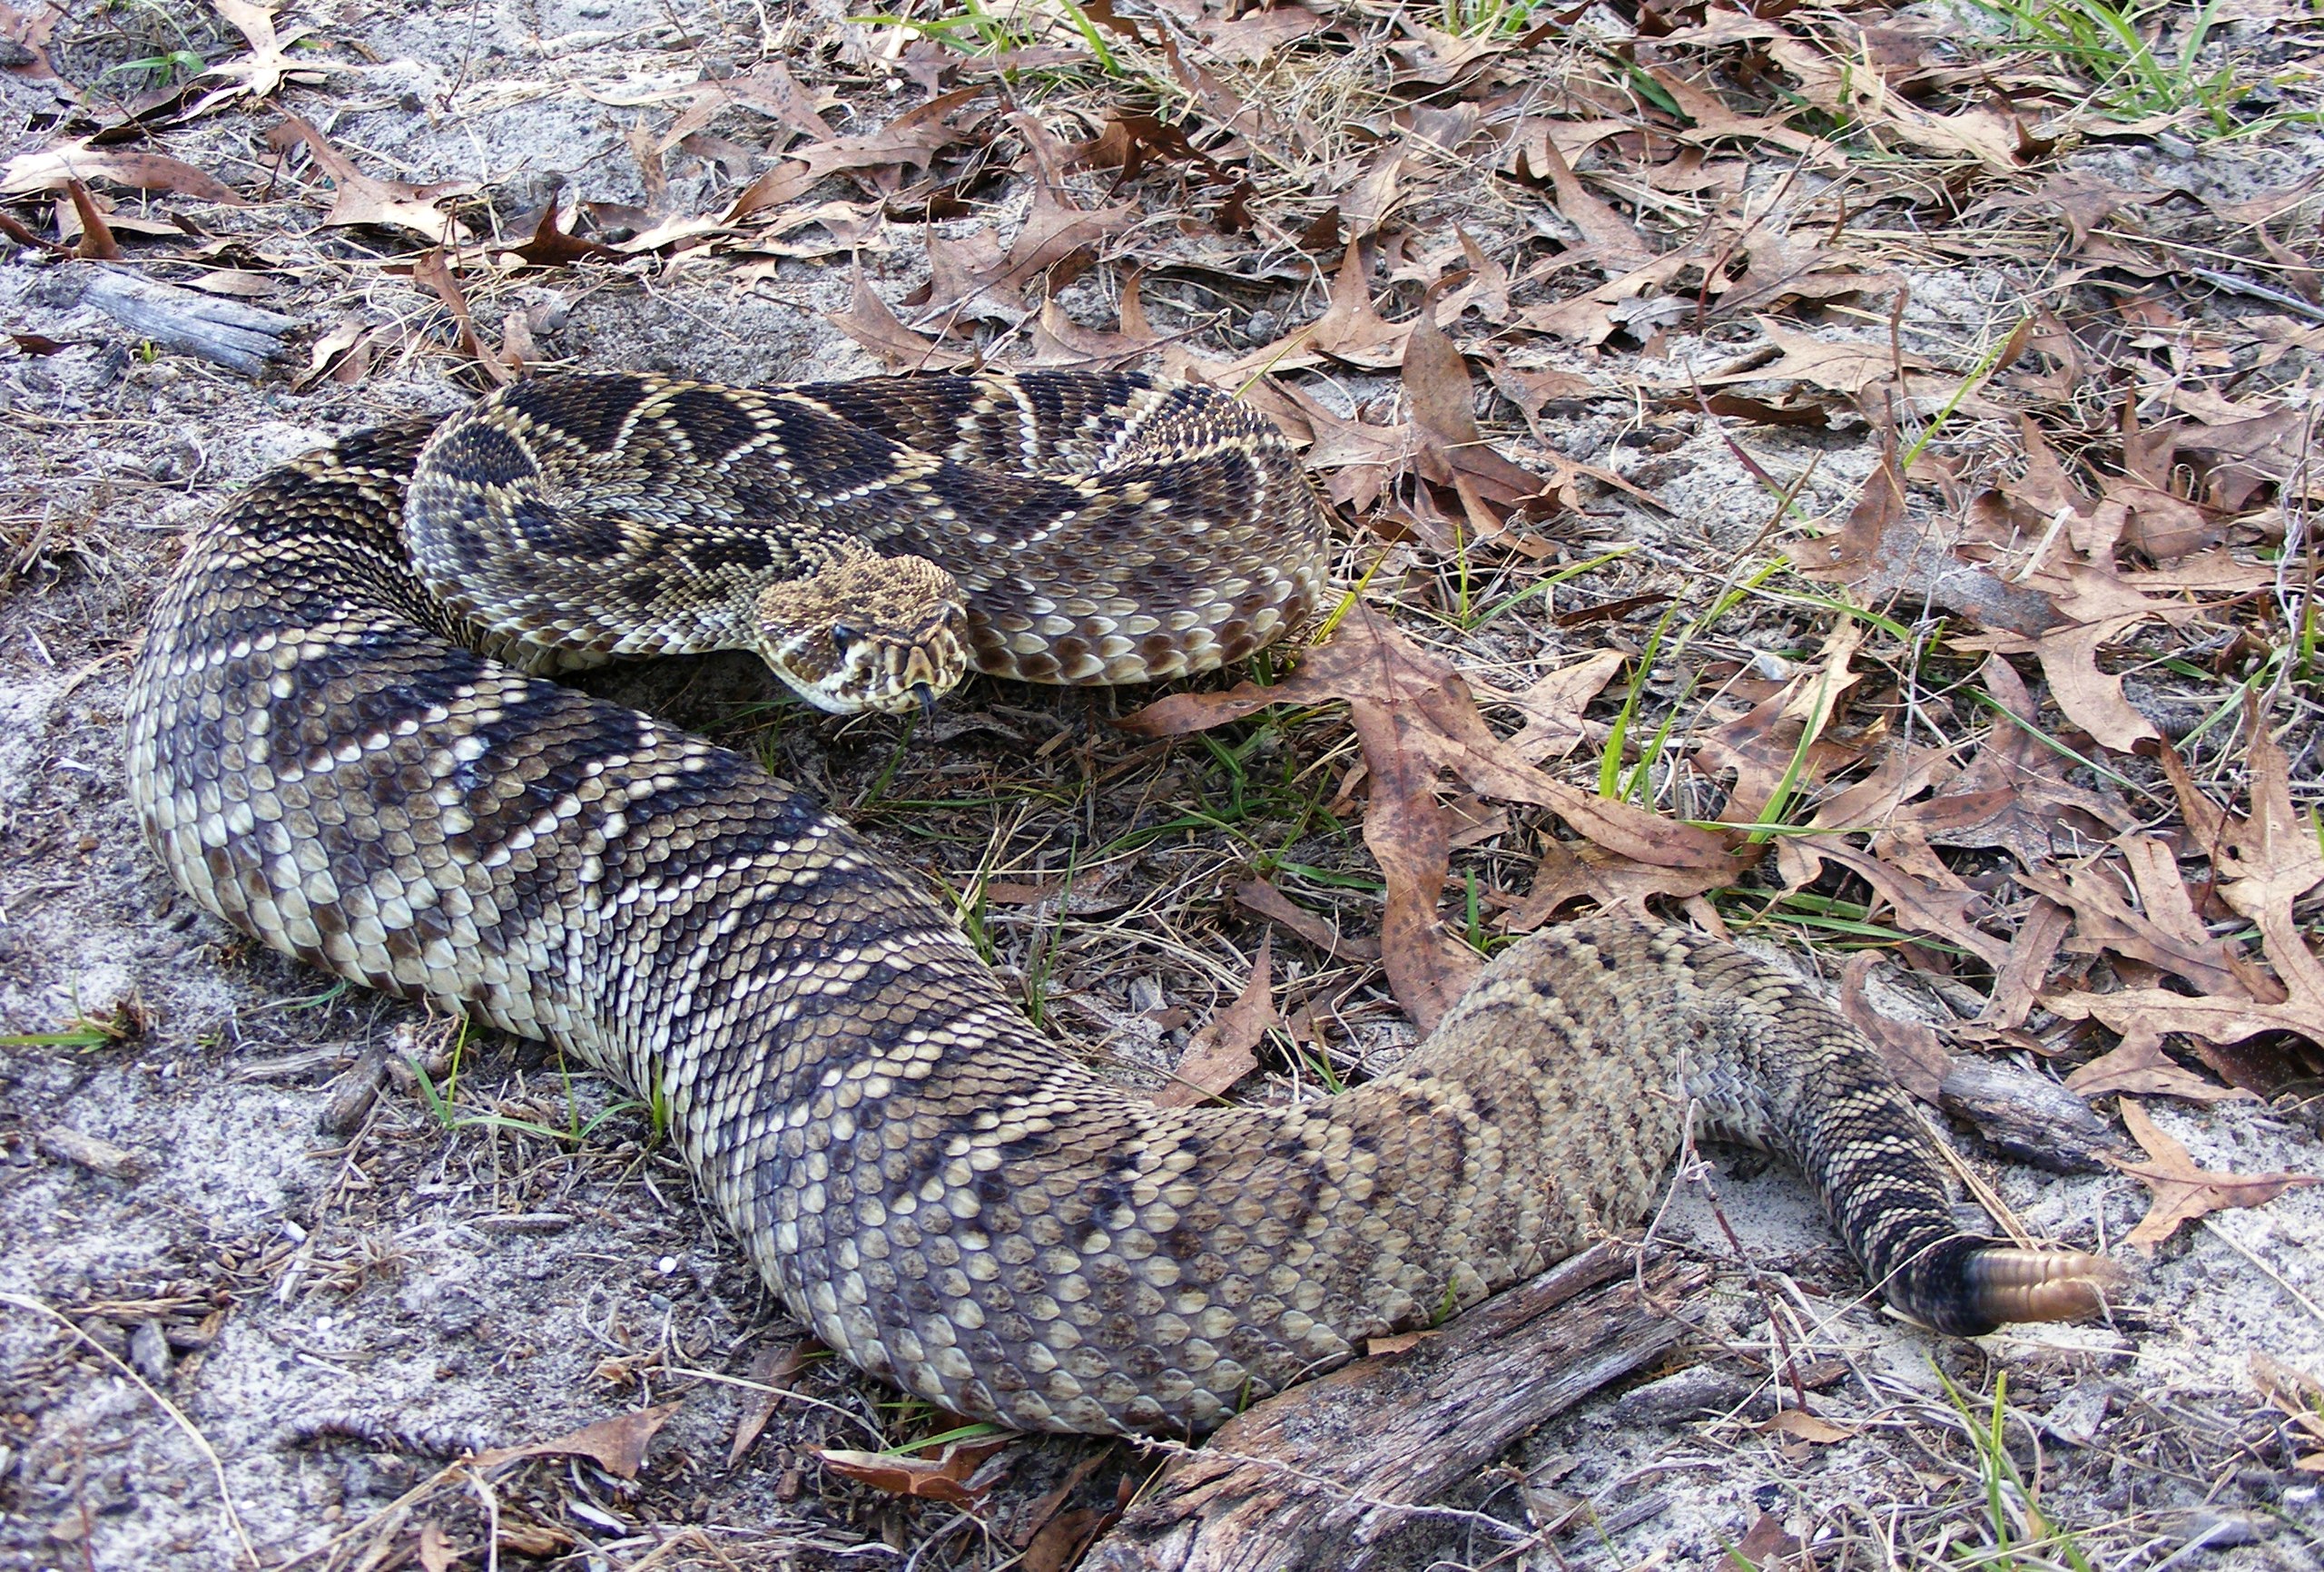 Le Crotalus adamanteus, de son nom scientifique, est le plus grand serpent venimeux d’Amérique du Nord, selon le site web du zoo. WikiCommons